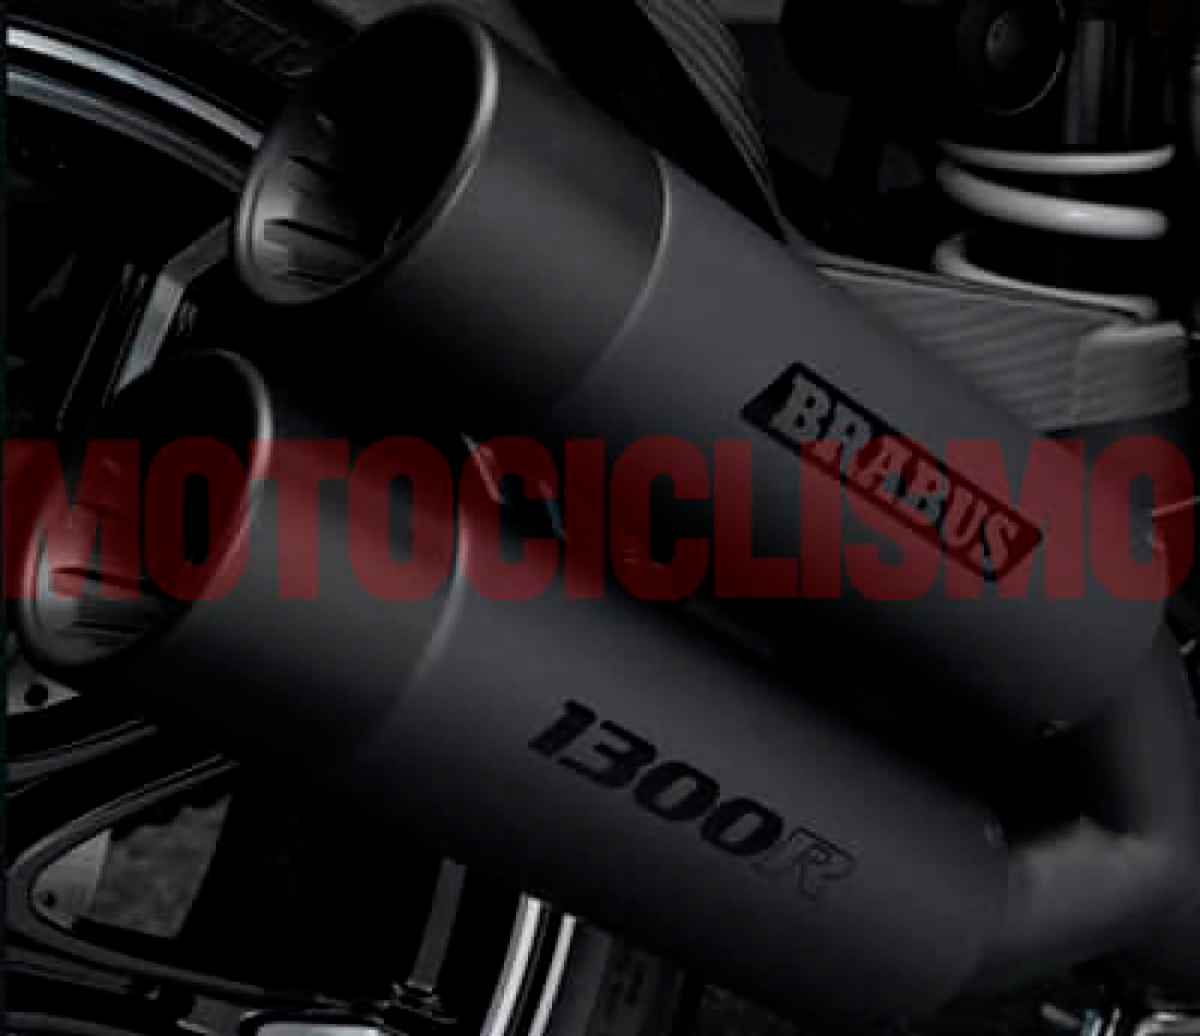 La KTM Brabus 1300 R tendrá dos tubos de escape en lugar de uno